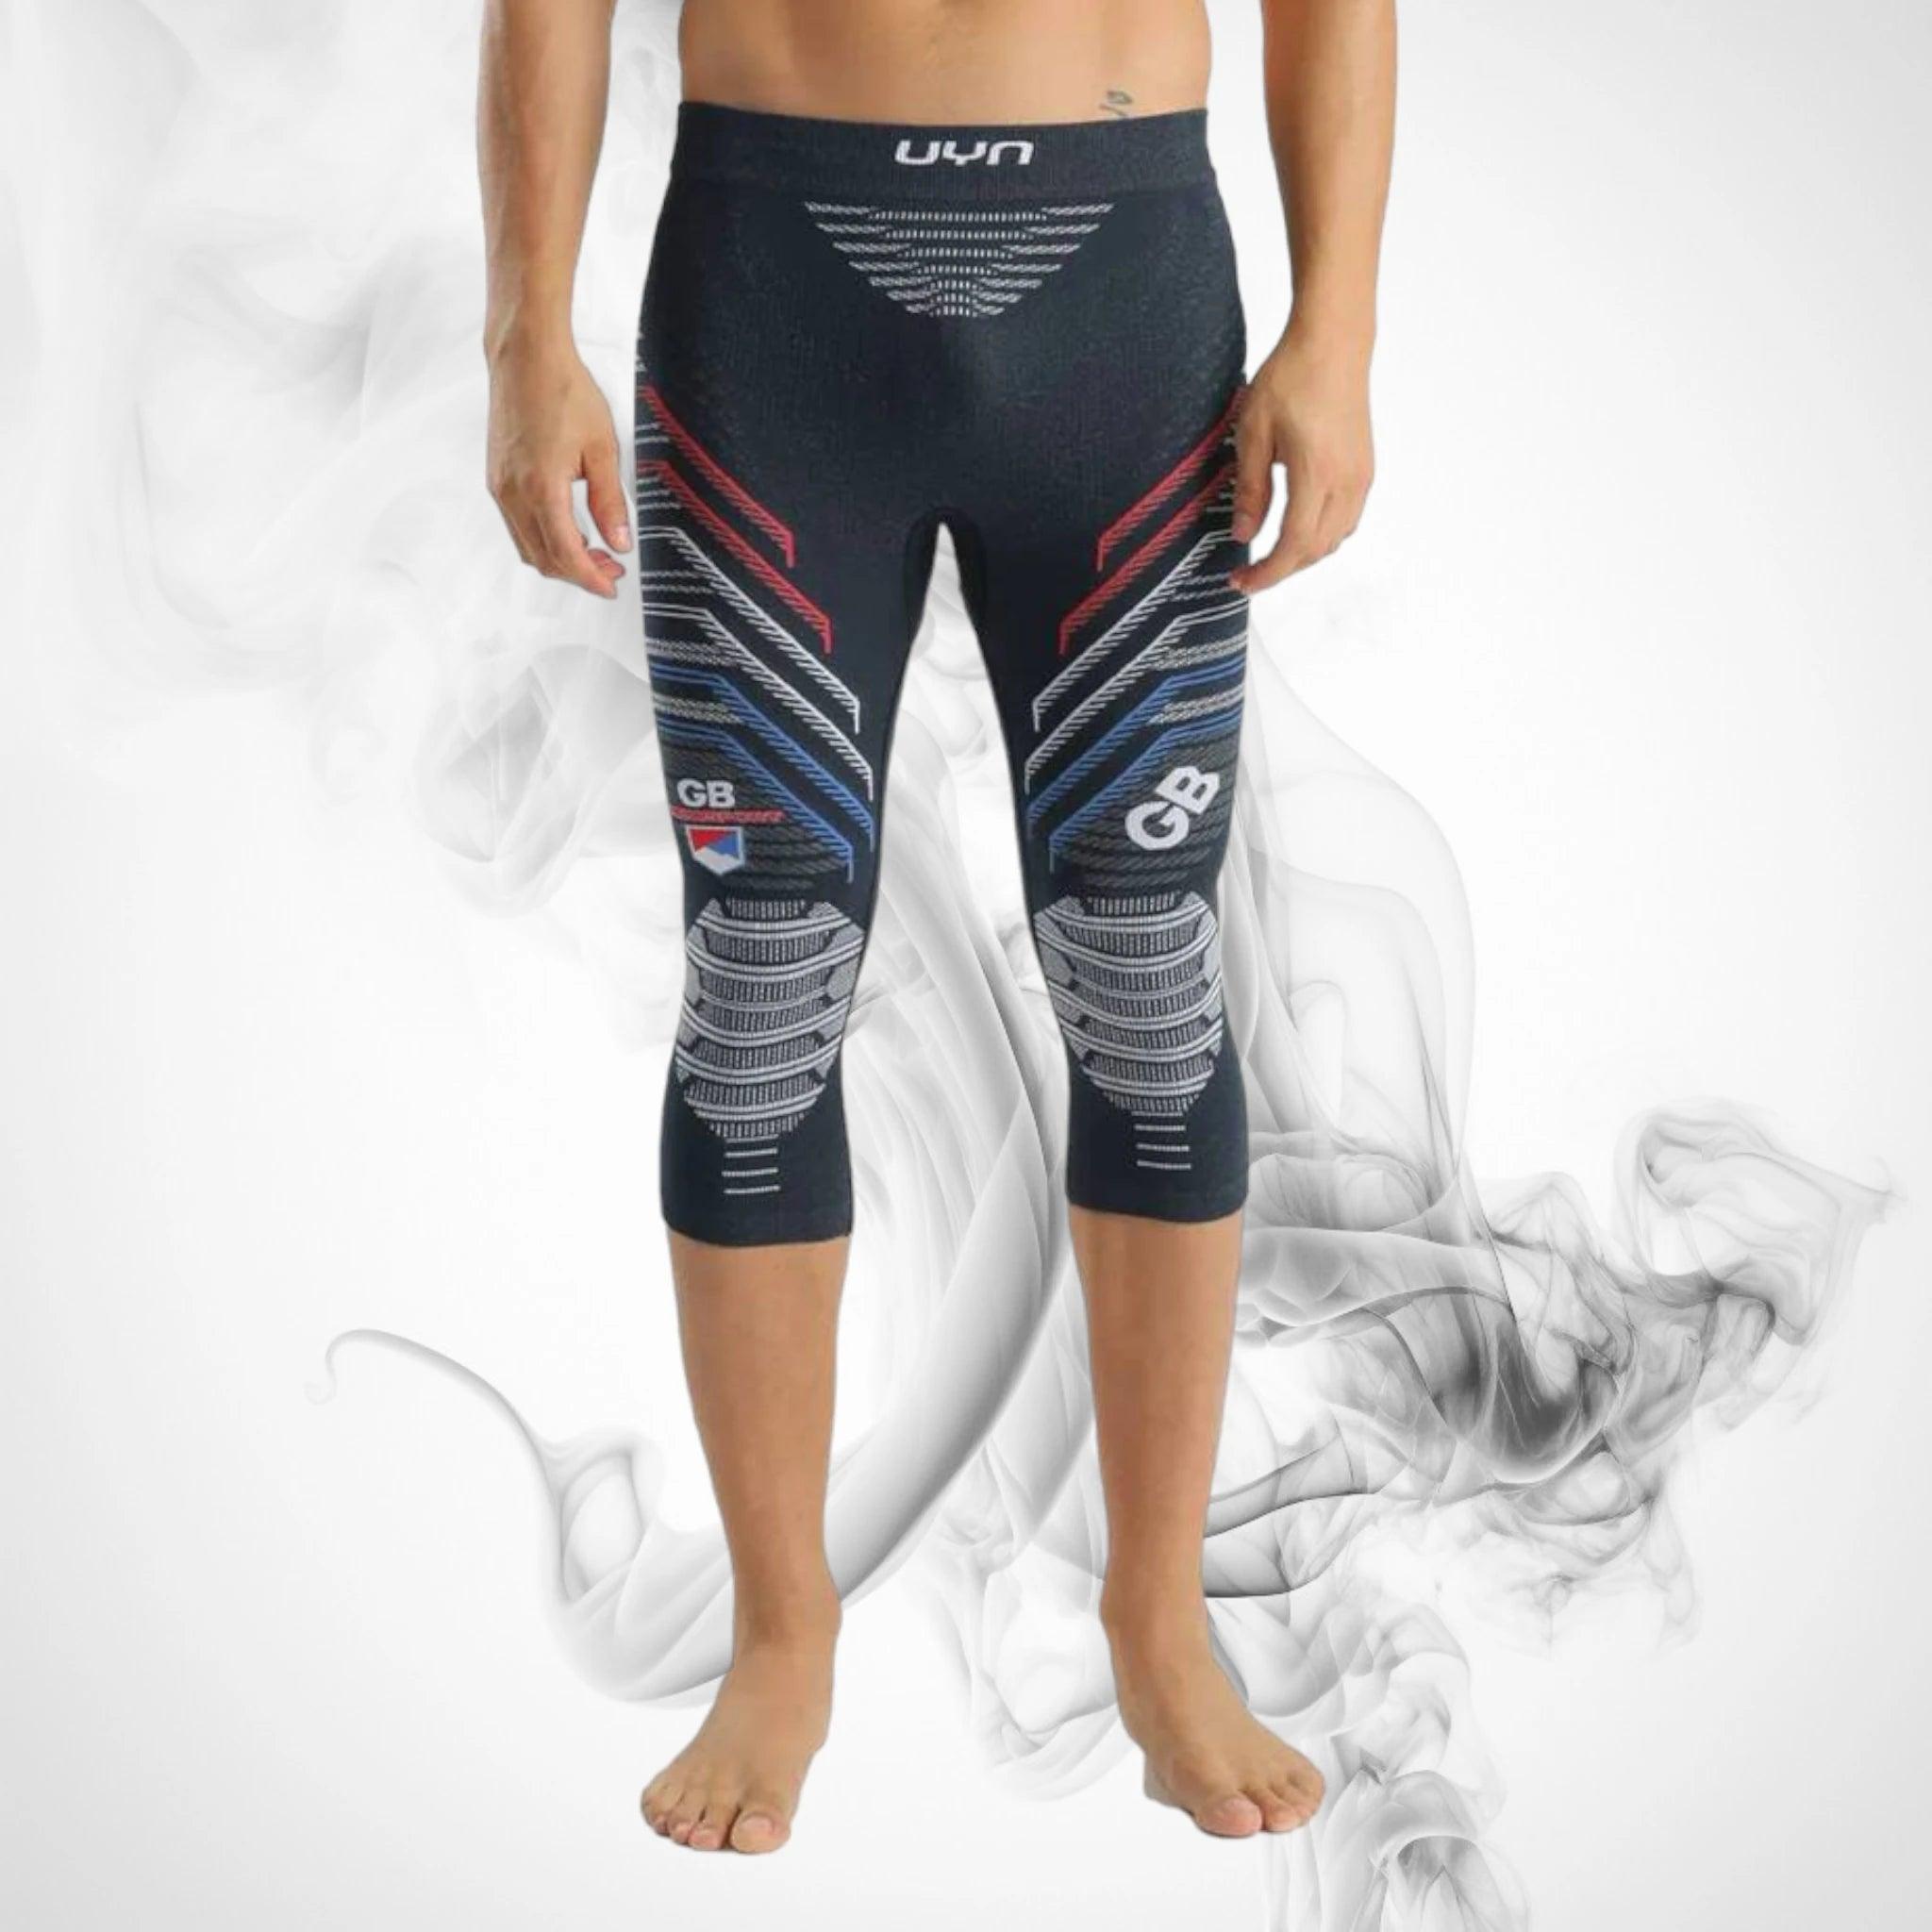 24 - Dash Racegear Dash Racegear, Thermal Wear underwear